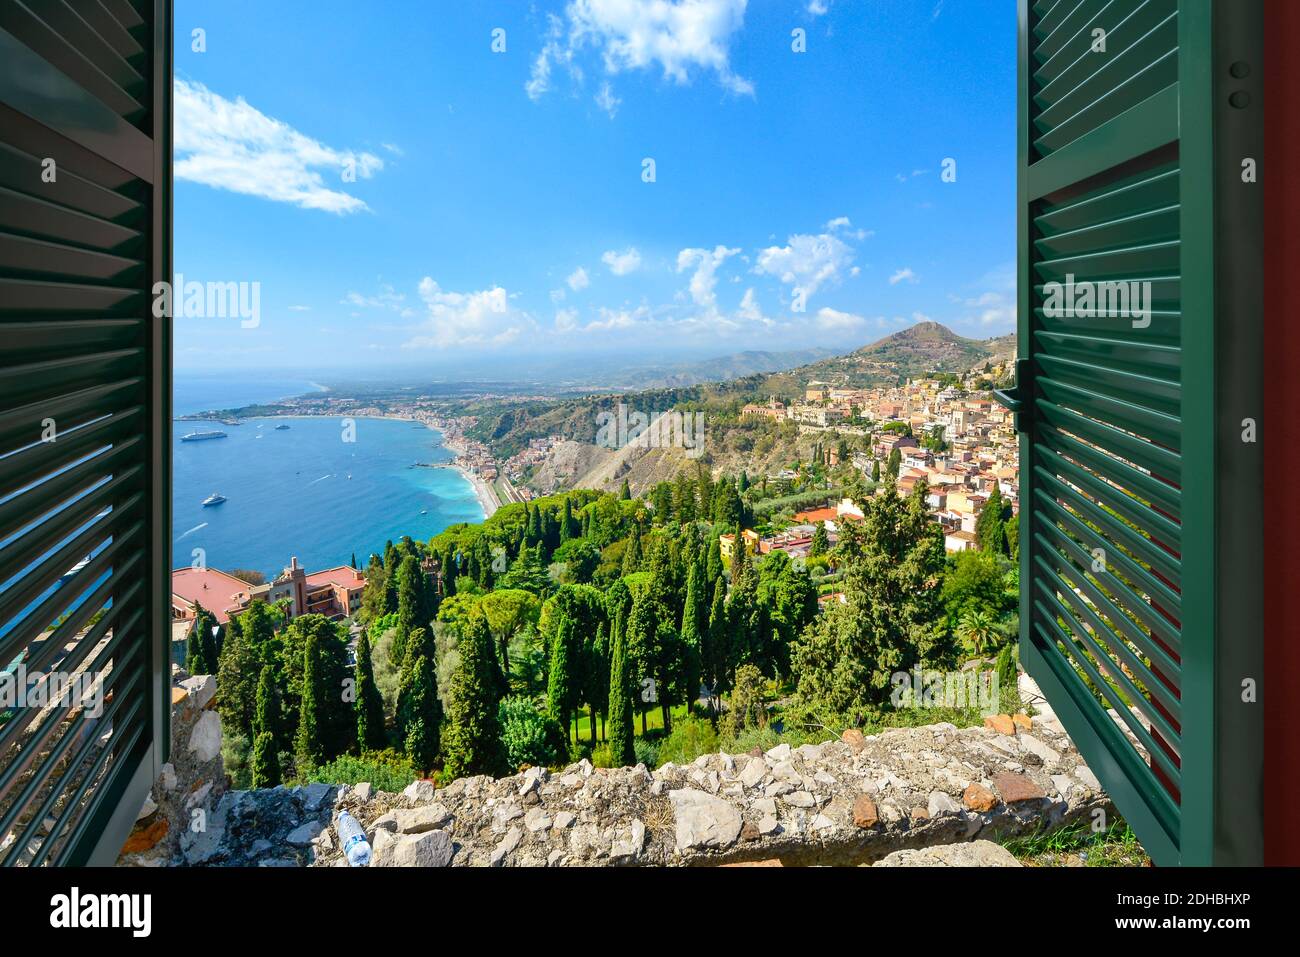 Vista attraverso una finestra aperta con persiane della costa e del villaggio di Taormina Italia, sull'isola della Sicilia nel Mar Mediterraneo Foto Stock